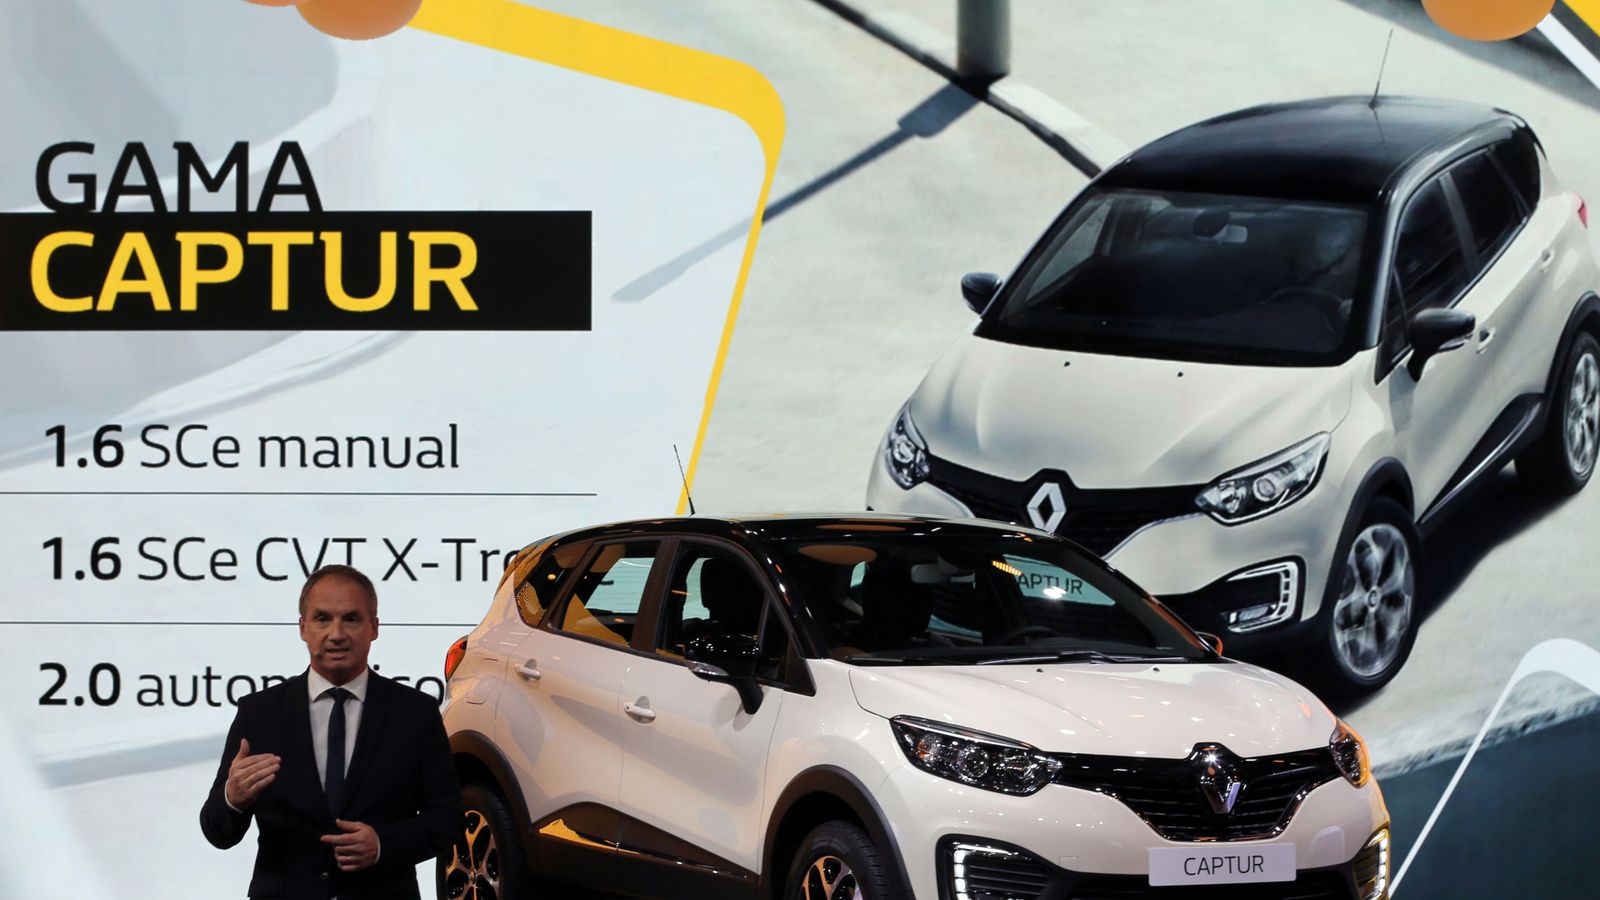 Foto: Presentación del Renault Captur, uno de los modelos investigados. (Reuters)